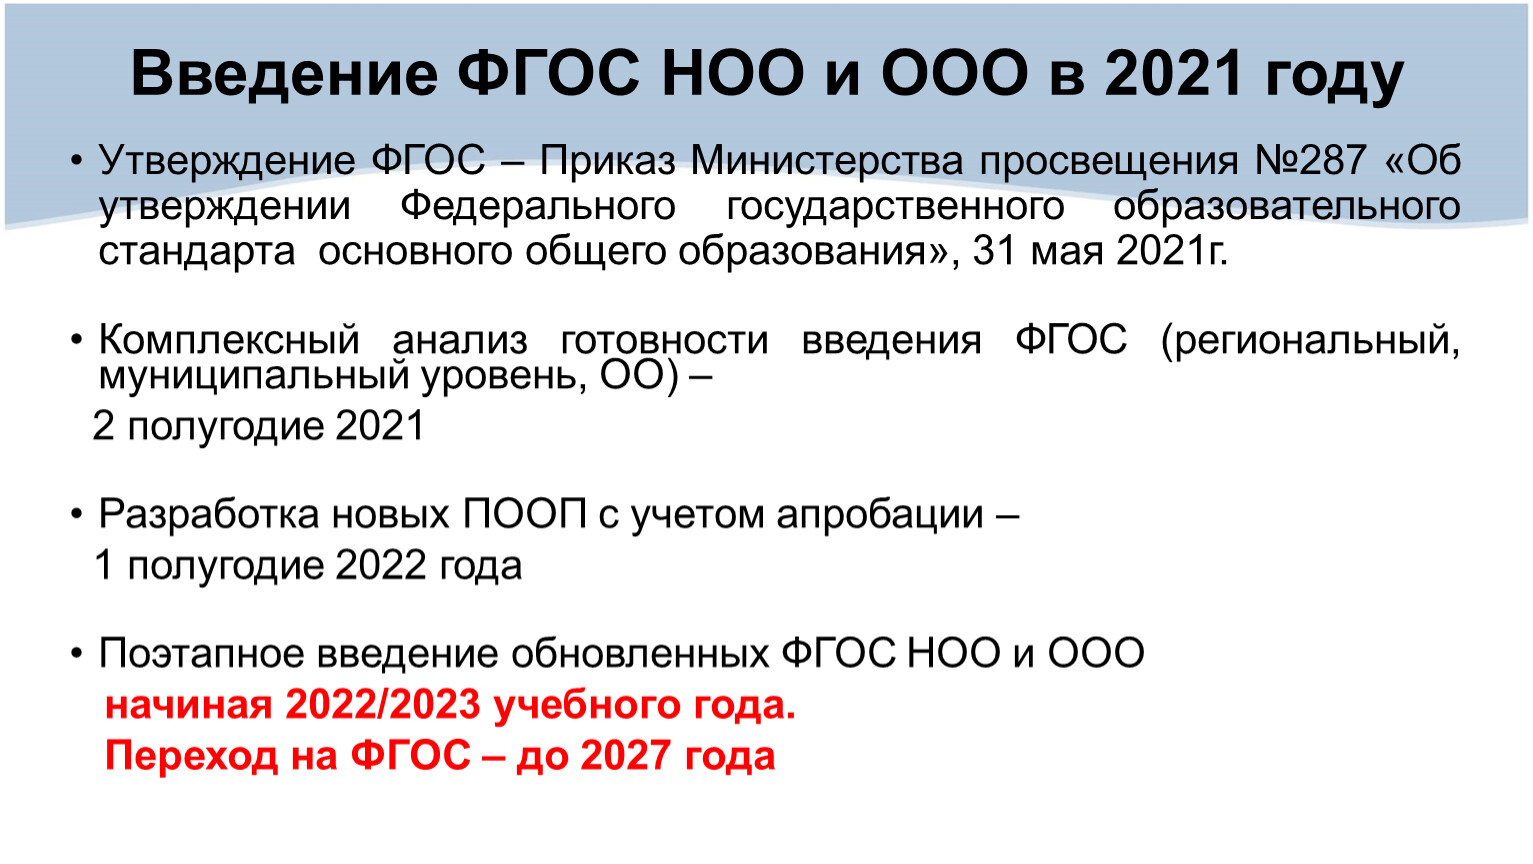 2023 2024 в доу. ФГОС третьего поколения 2022. ФГОС 3.0. Нормативная база введения ФГОС НОО, ФГОС ООО. ФГОС третьего поколения 2022 кратко.